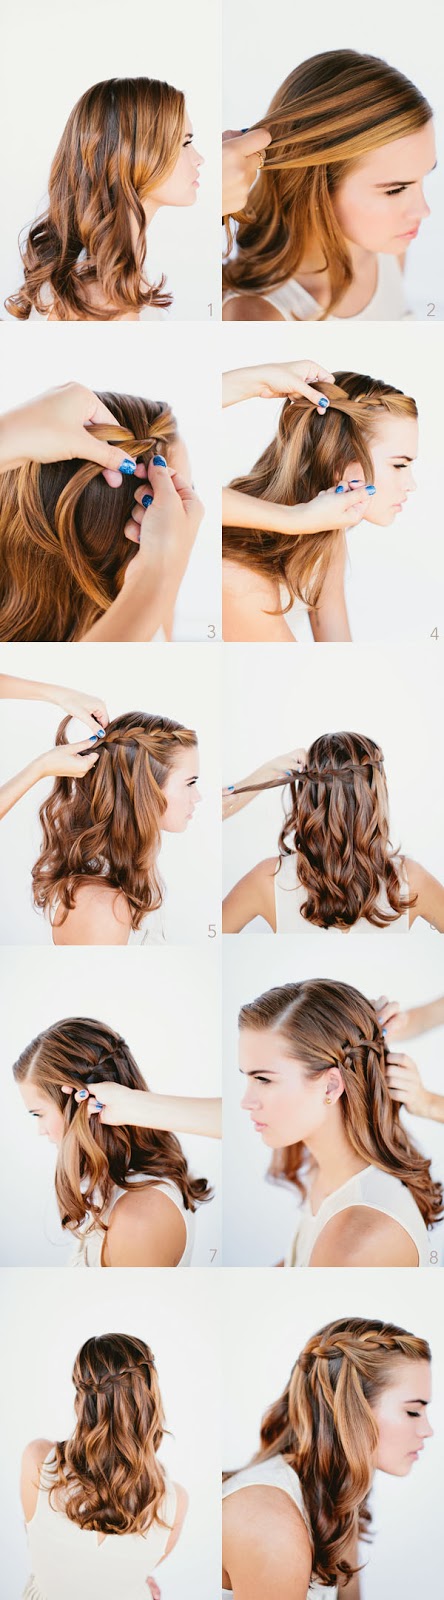 10 penteados bonitos que você pode fazer em 10 minutos - Site de Beleza e  Moda